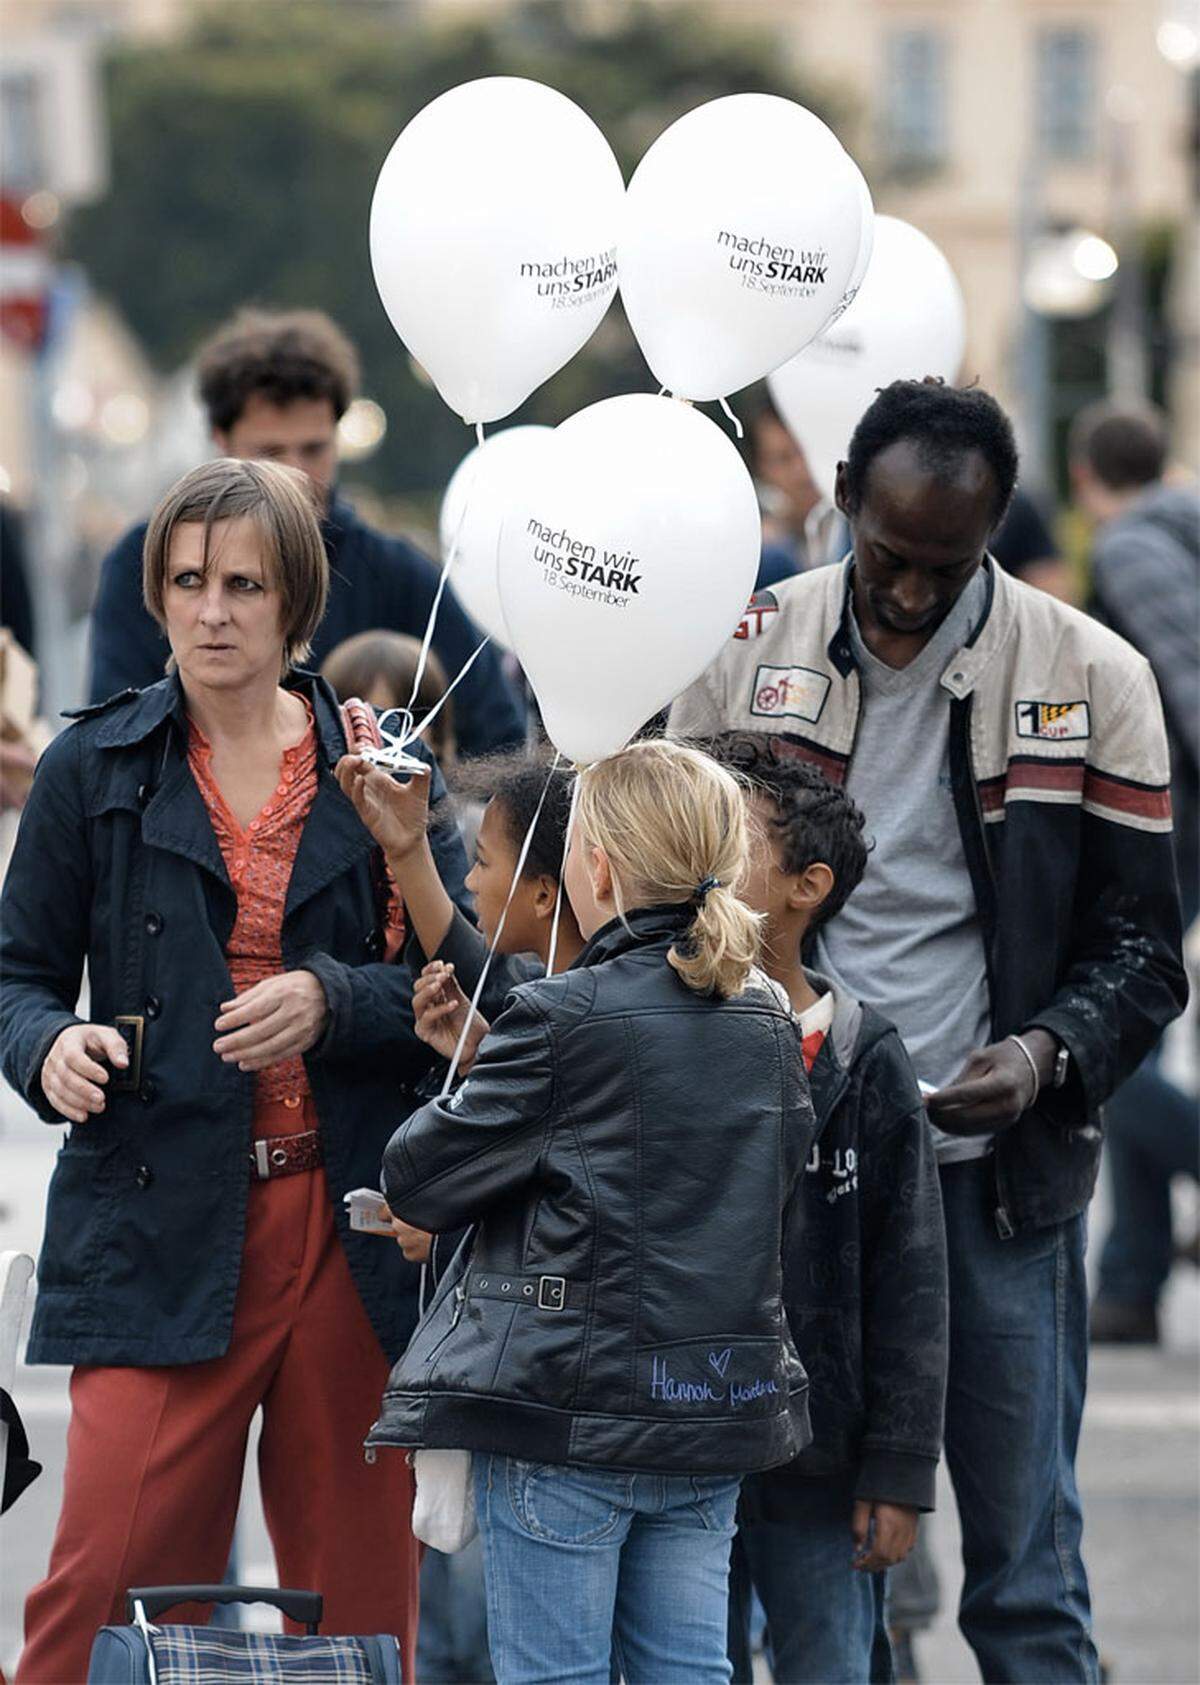 Laut Veranstalter Philip Sonderegger, SOS-Mitmensch, übten sich die Parteien - trotz Wiener Wahlkampfs - bei der Veranstaltung überwiegend in Zurückhaltung. Nur da und dort war ein grüner Luftballon zu sehen.